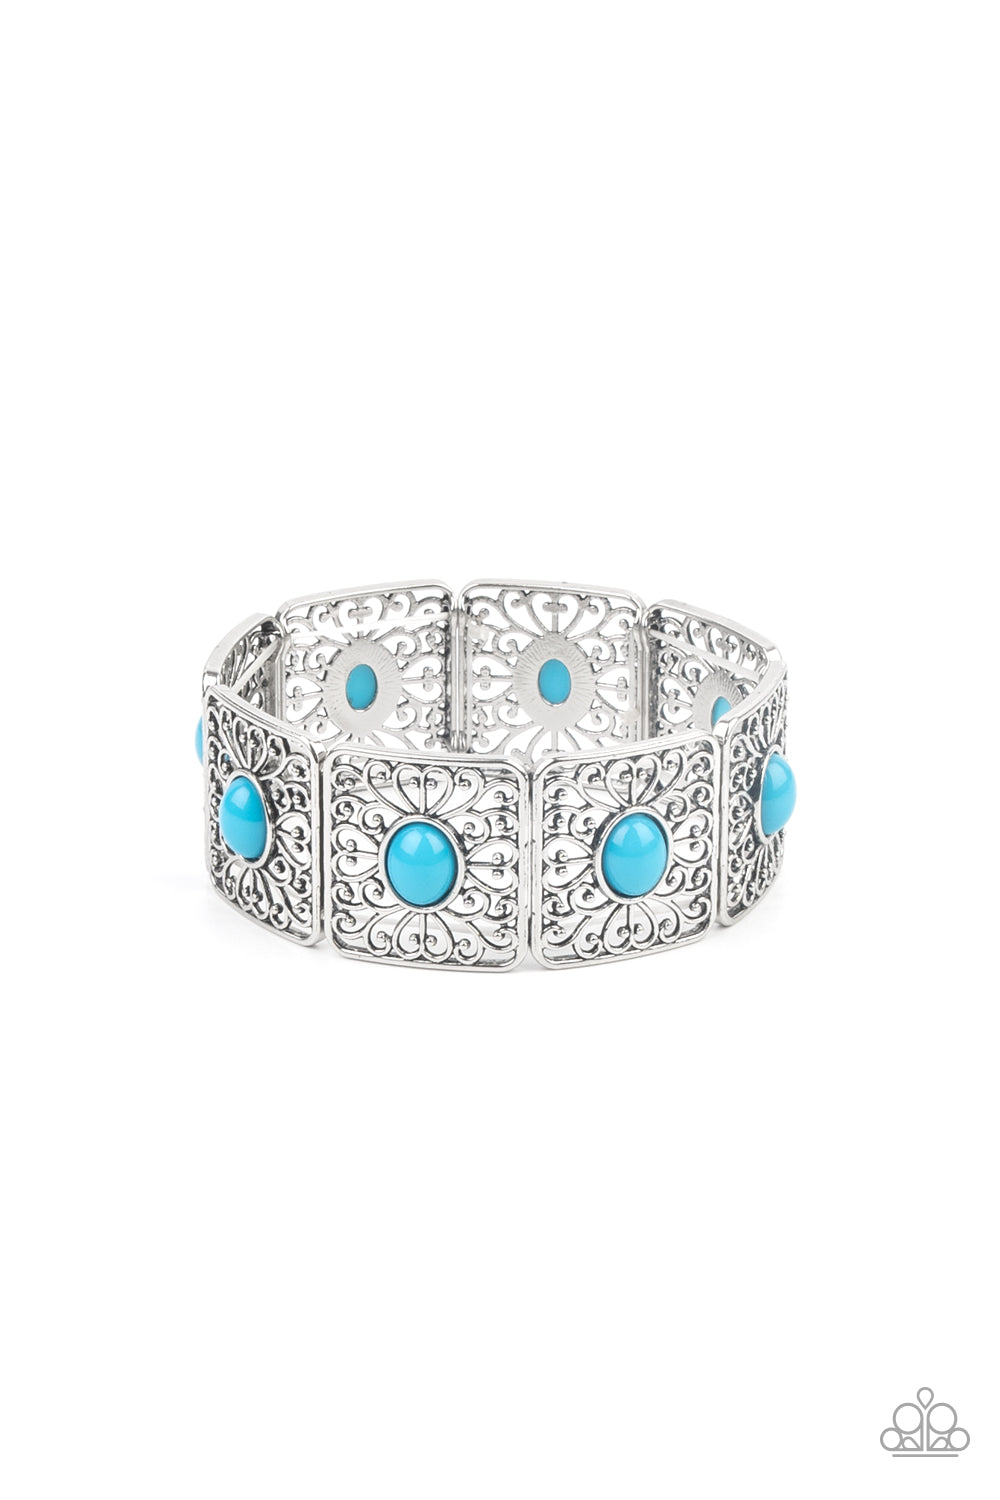 Cakewalk Dancing - Blue bracelet